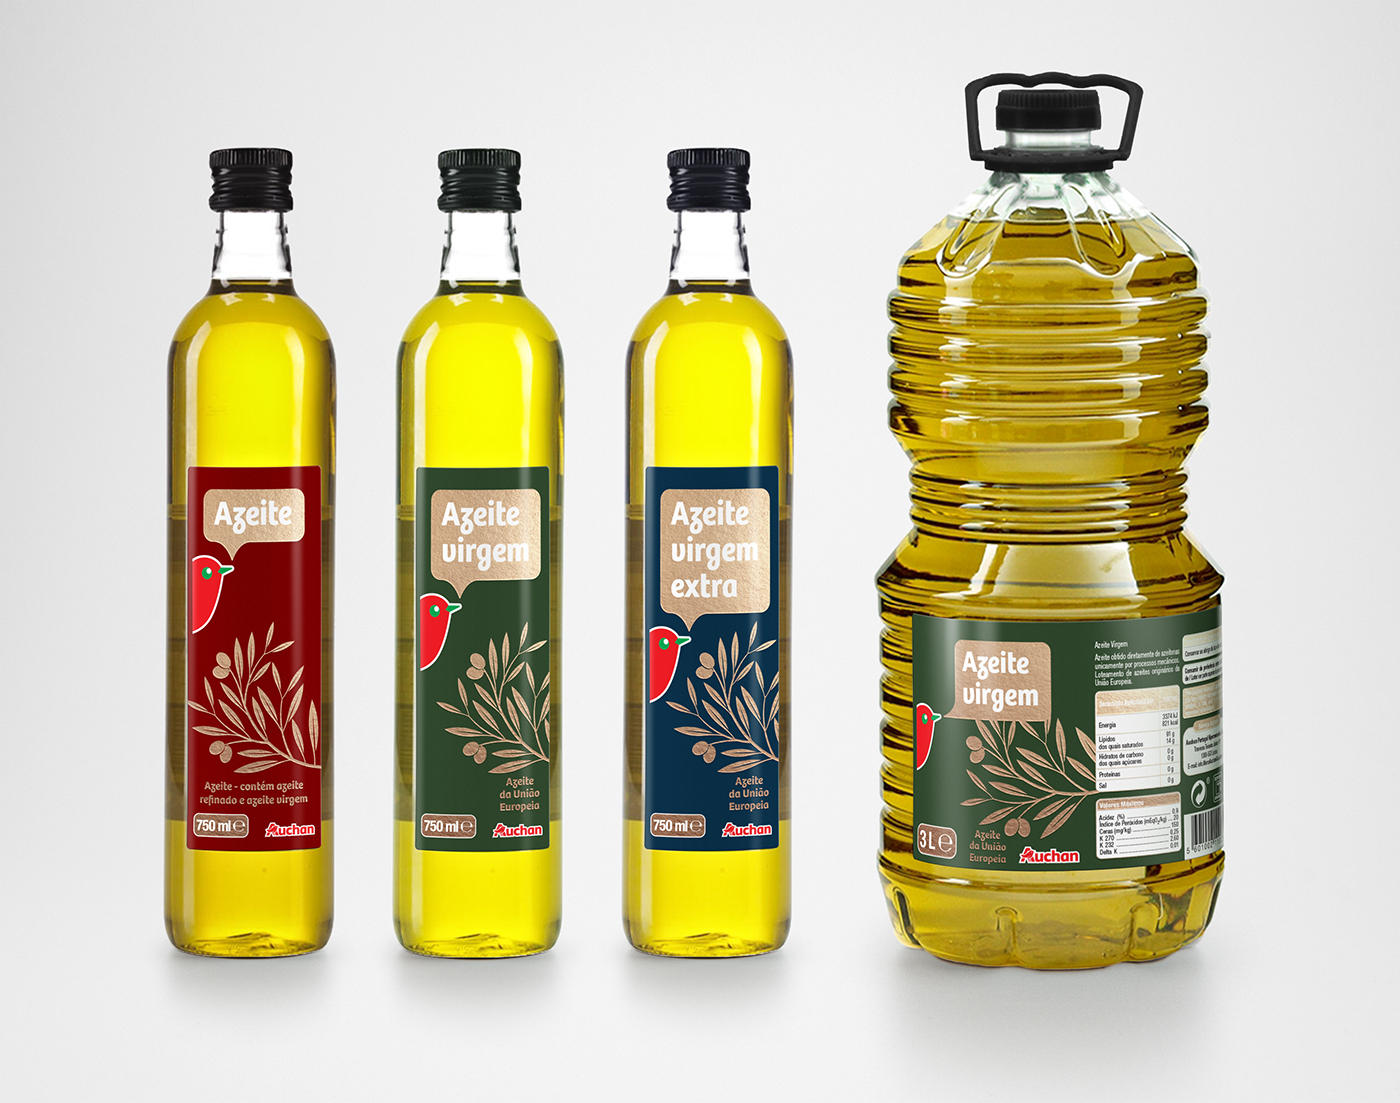 Packaging ILLUSTRATION  Supermarket bottle Auchan Olive Oil olives oil AZEITE Label